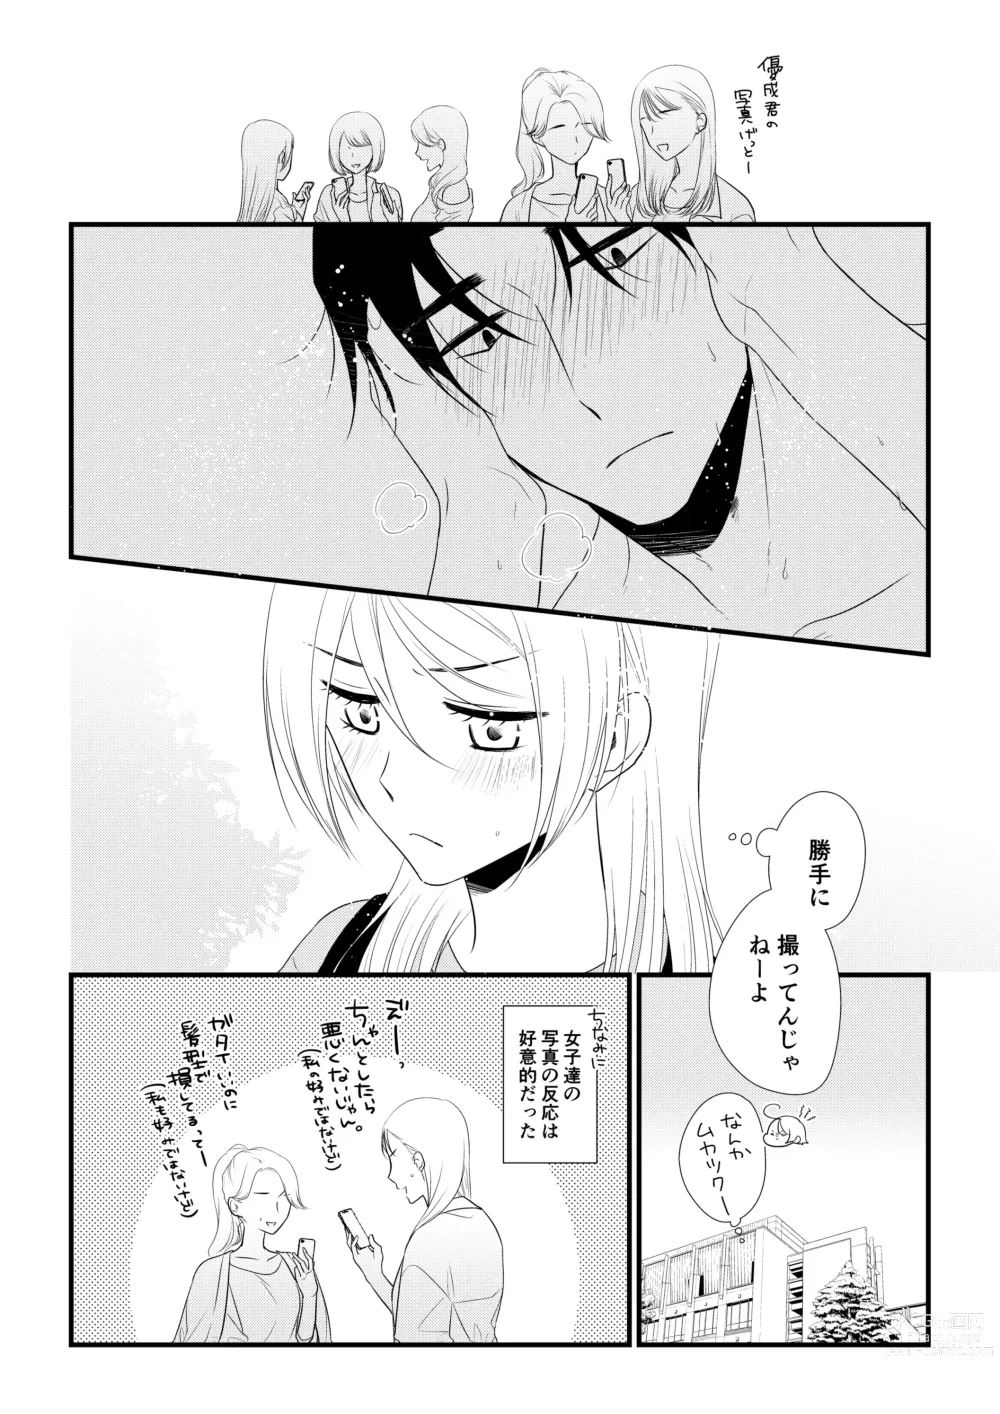 Page 105 of doujinshi Itsuki to Yuusei 2